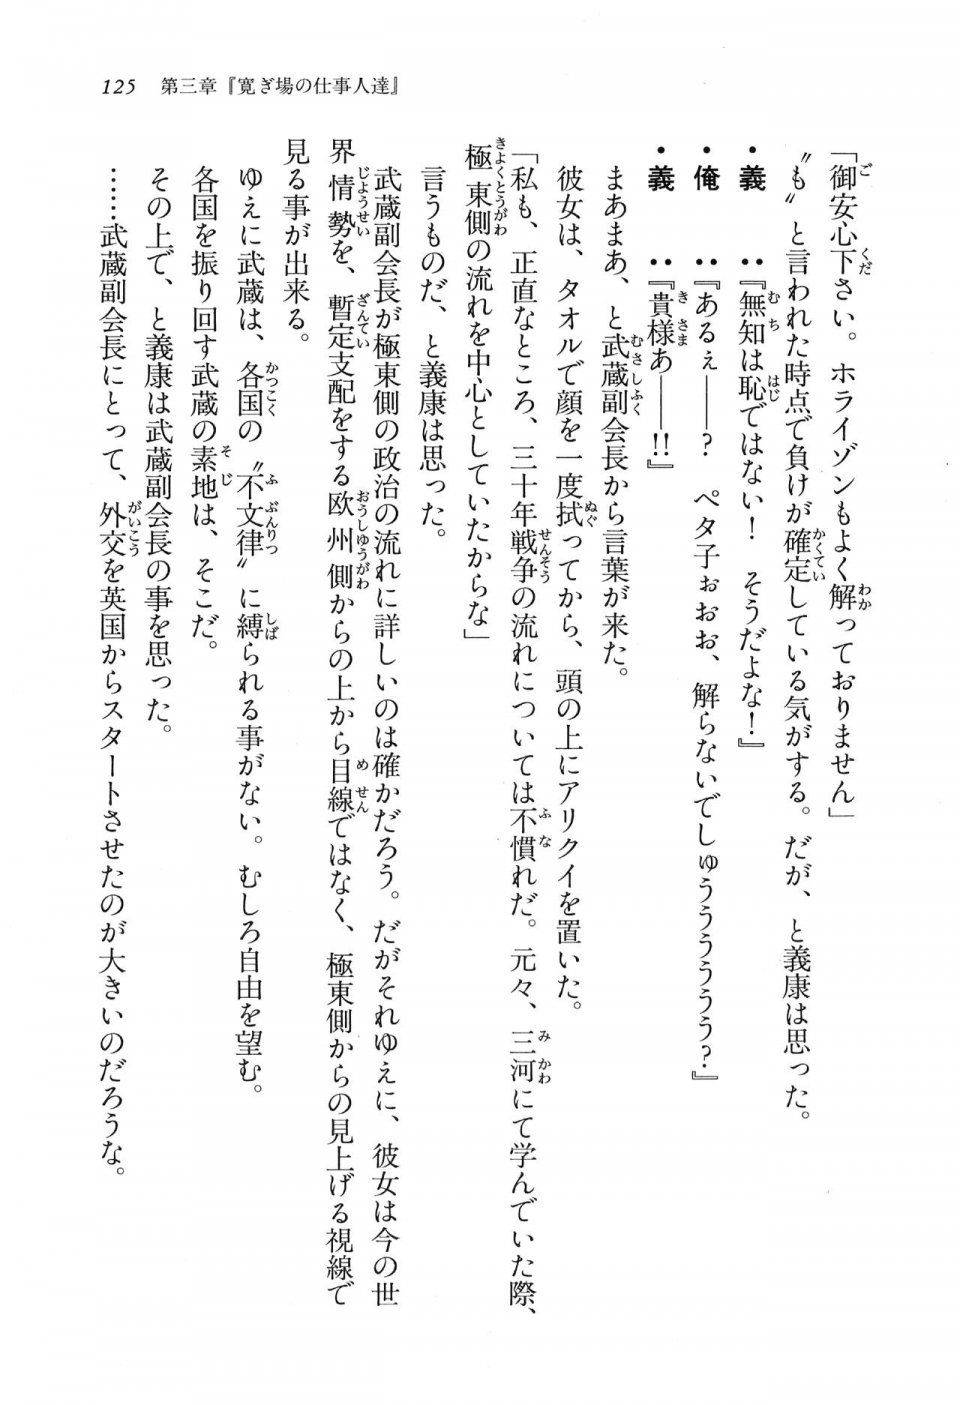 Kyoukai Senjou no Horizon LN Vol 16(7A) - Photo #125